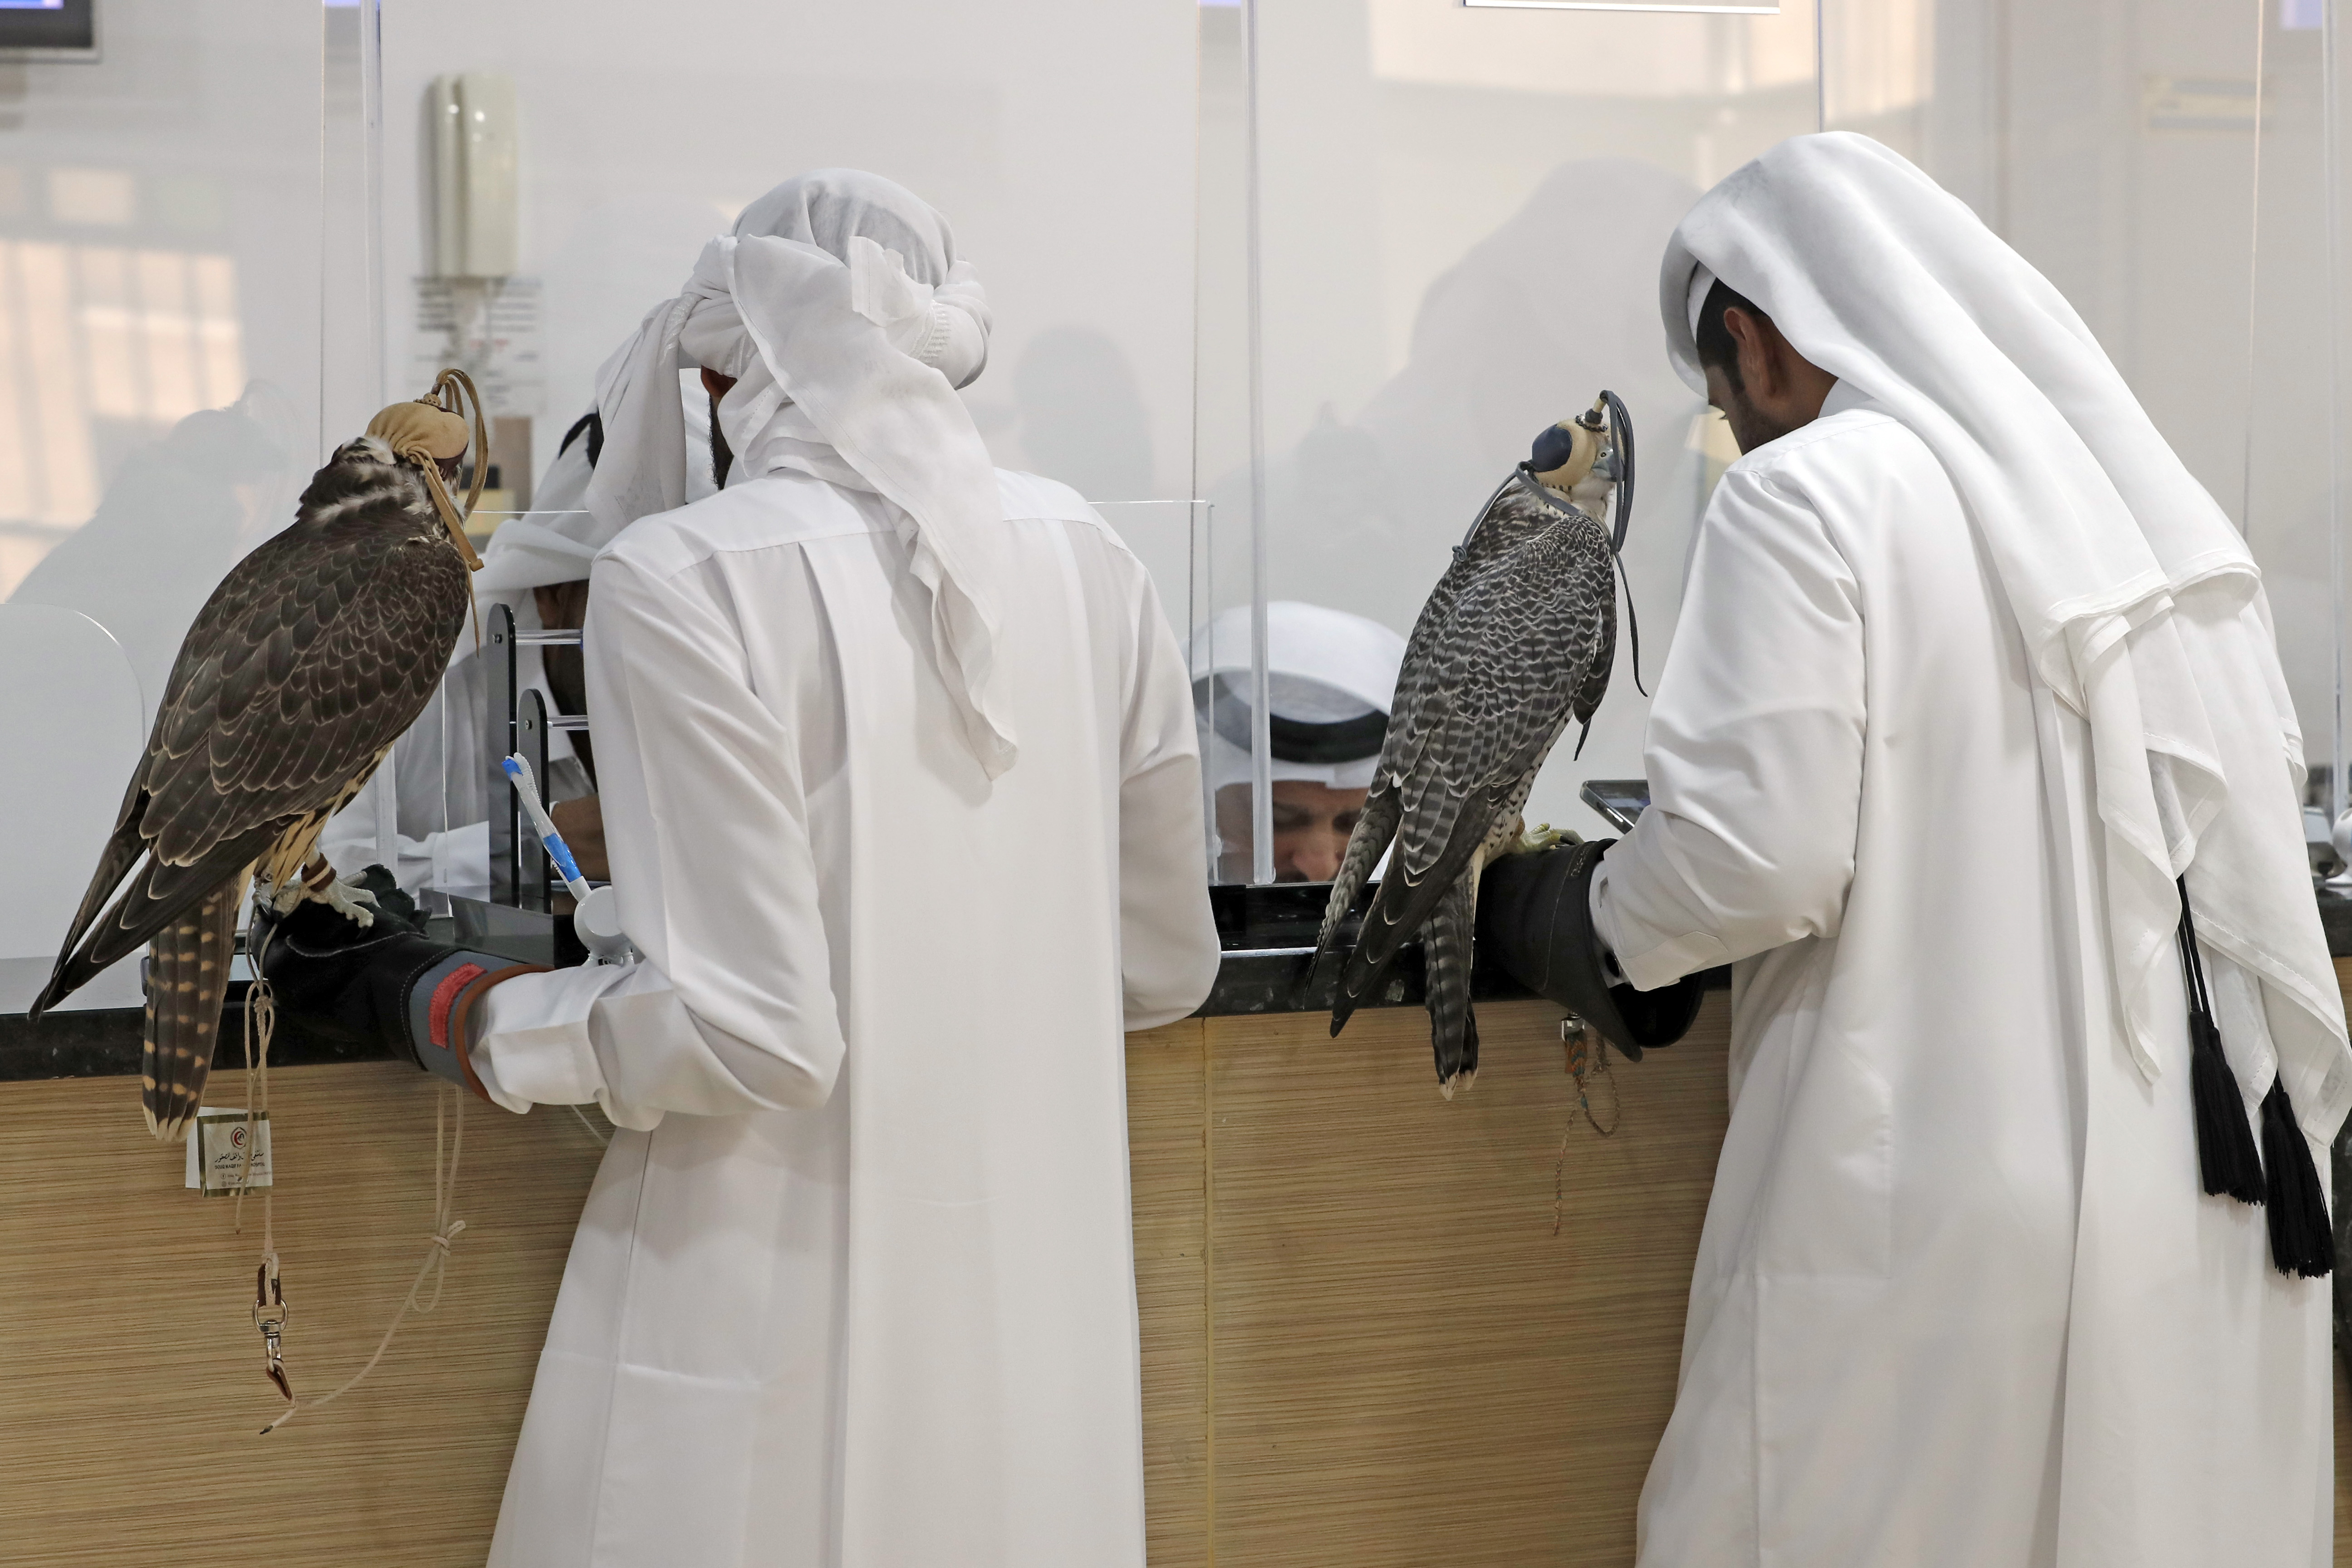 El halcón milenario de Qatar 2022: turismo, lujo y tradición